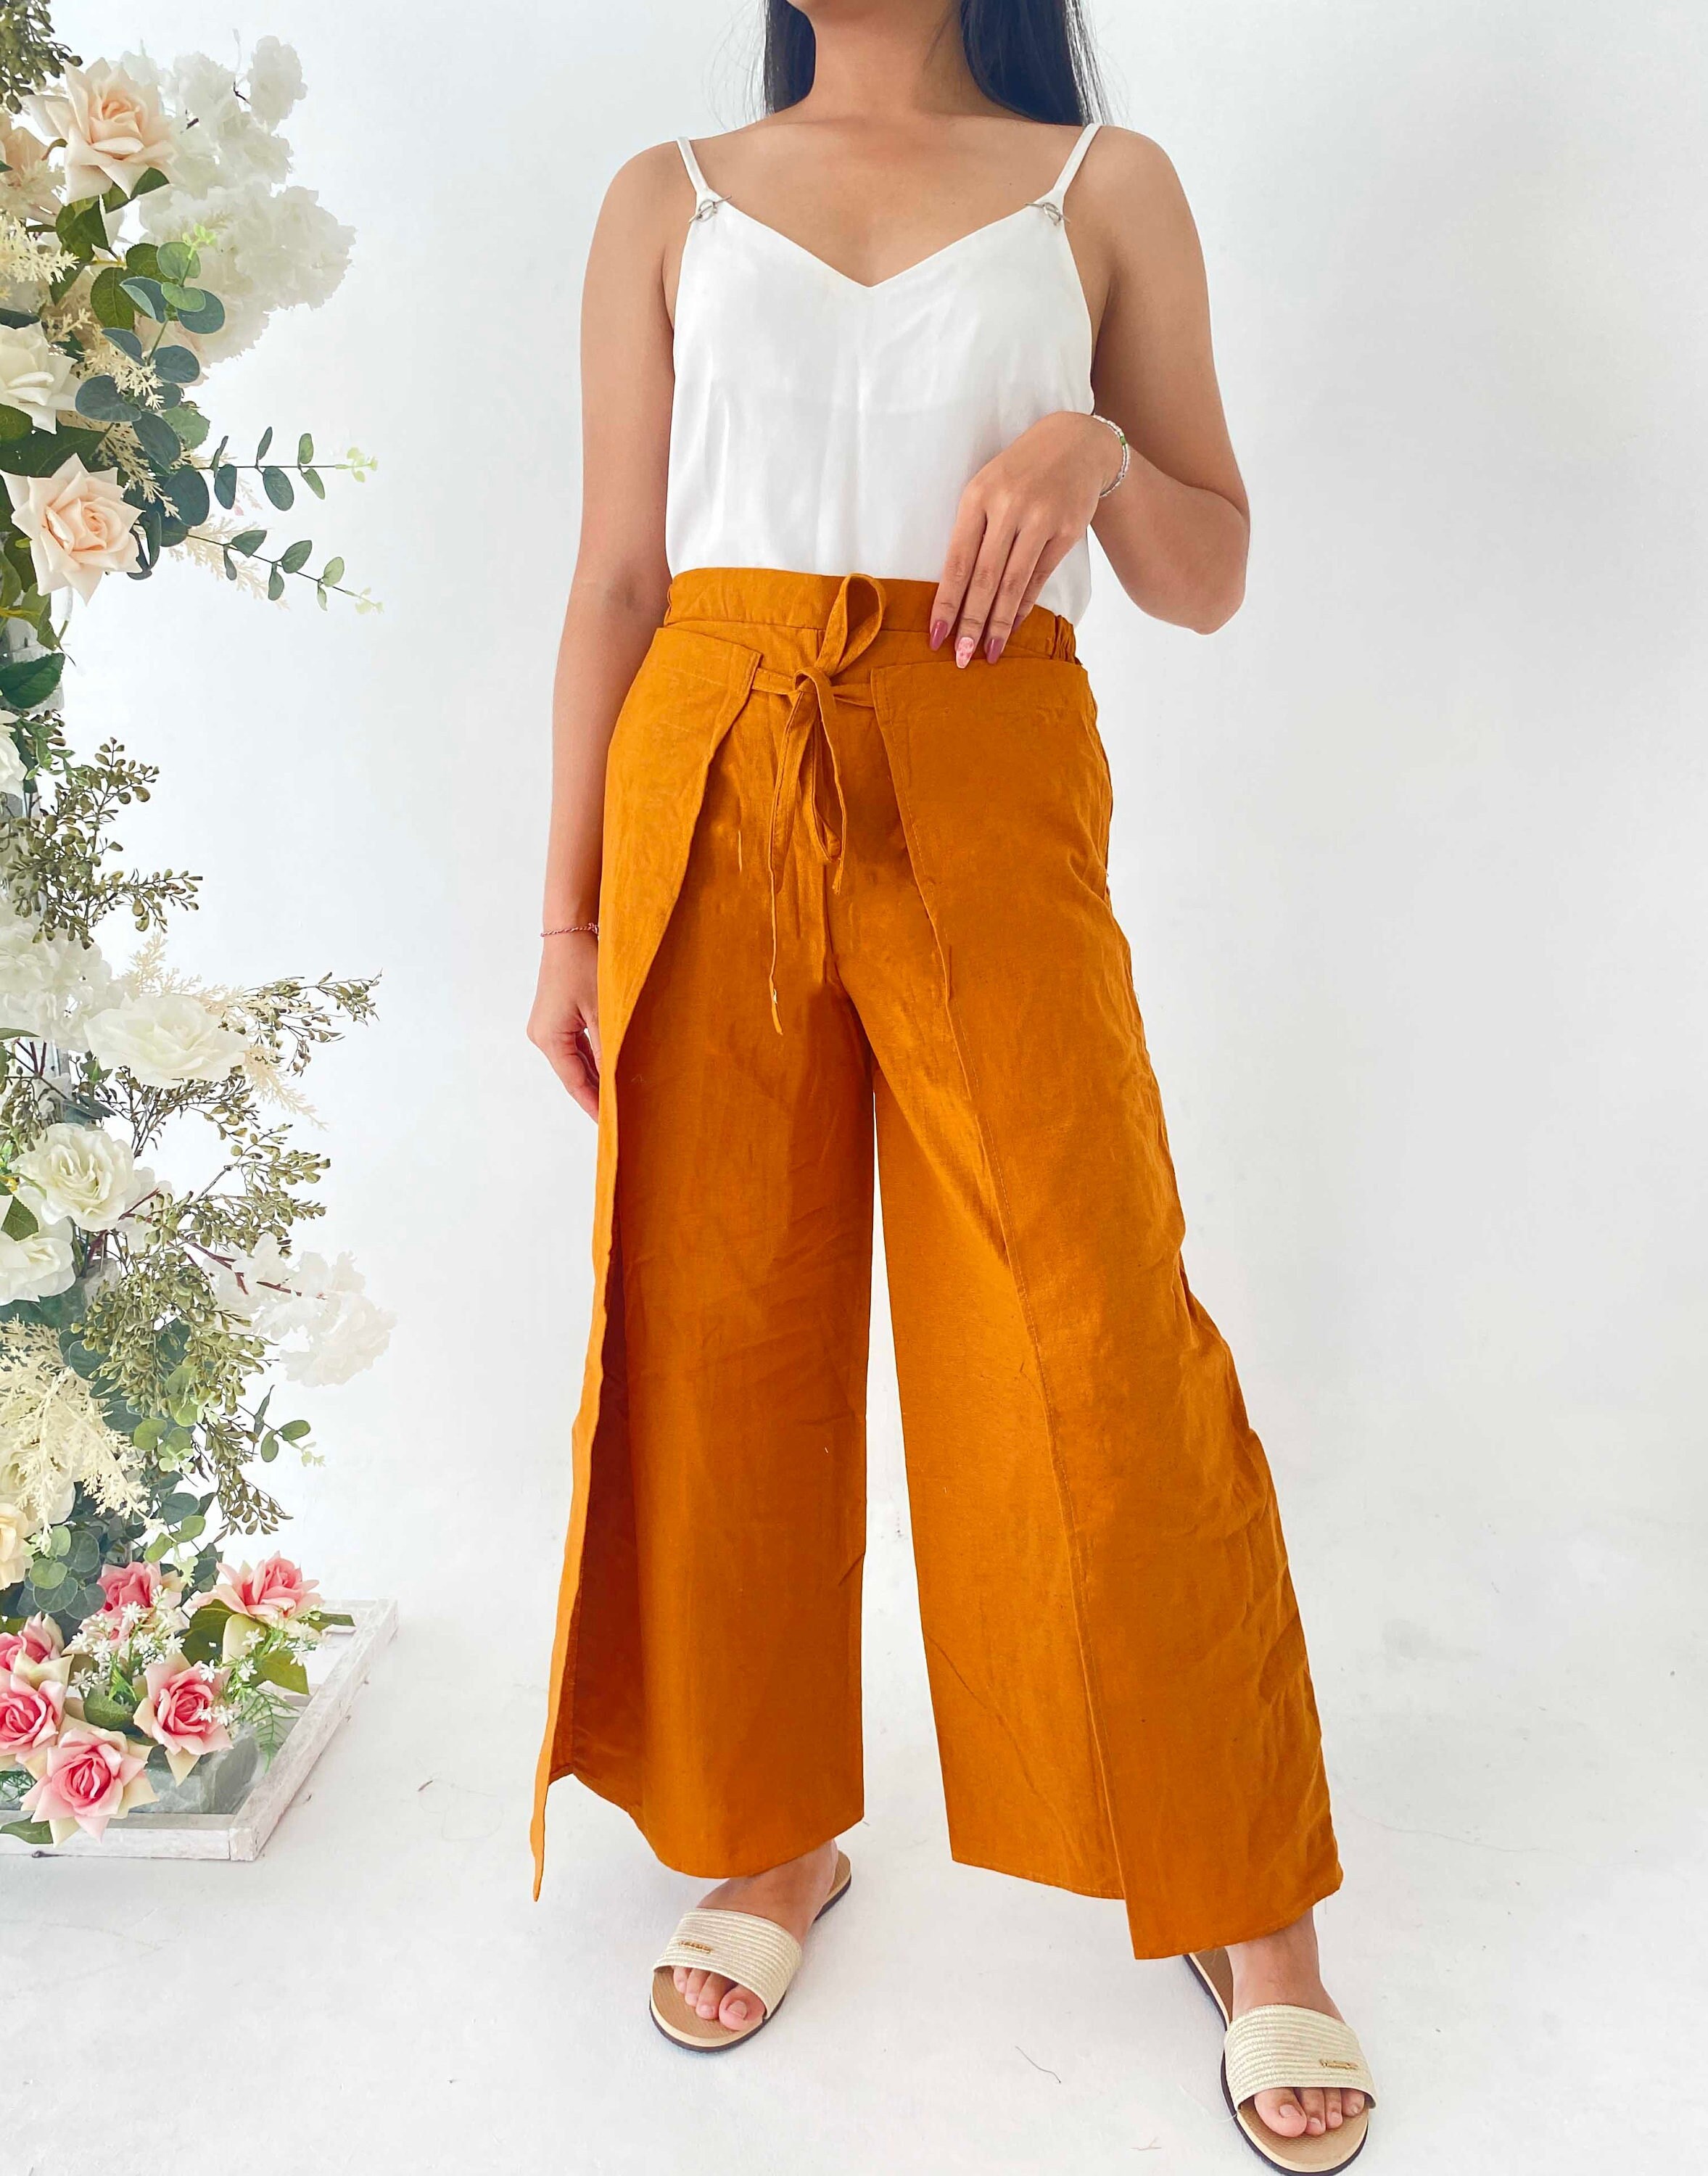 Buy Bali Linen Pants Online In India -  India